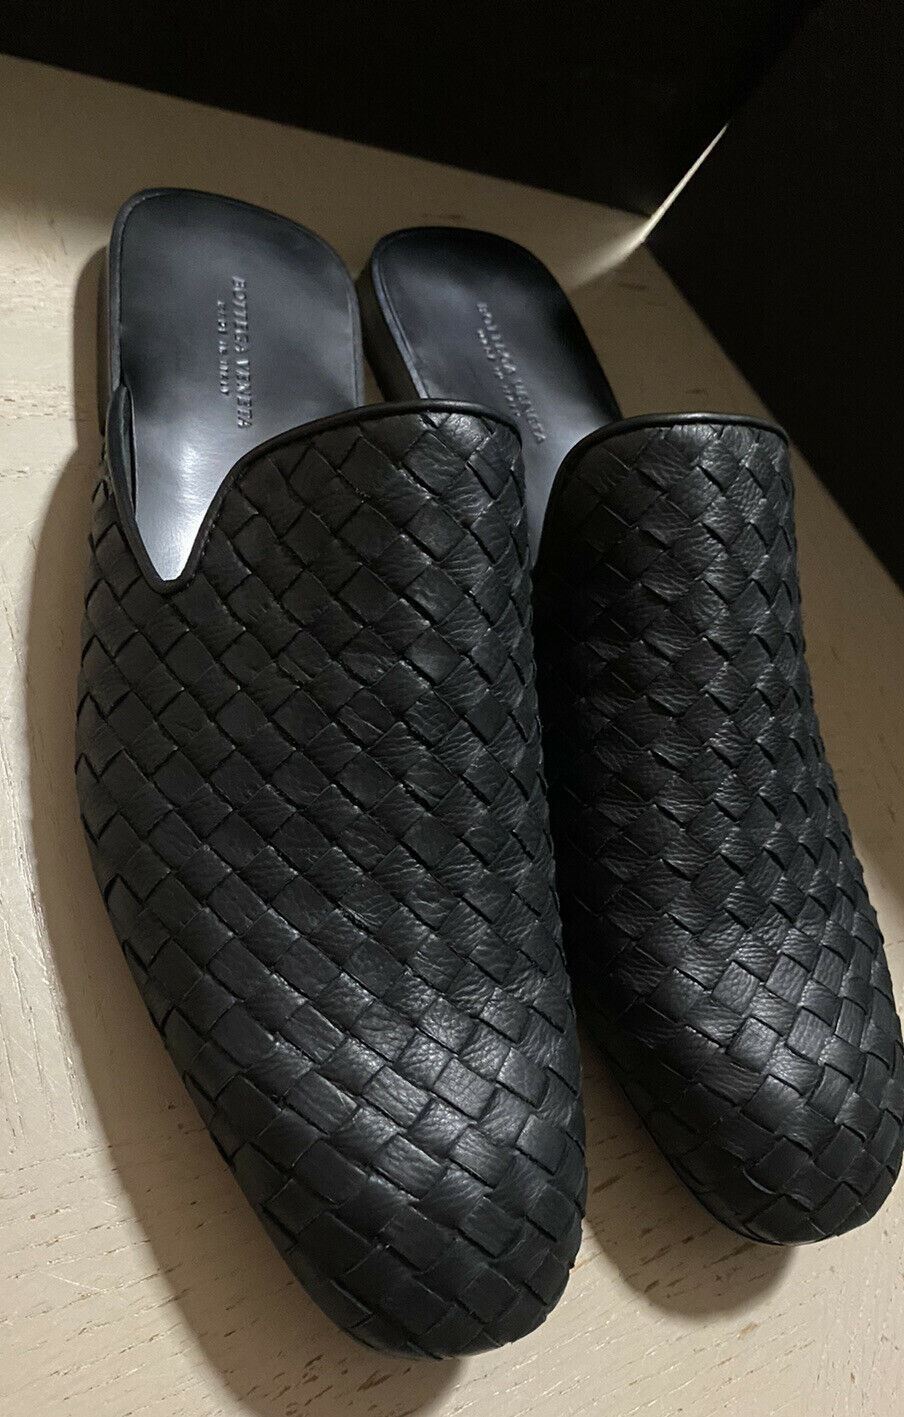 NIB Bottega Veneta Herren Slipper Sandale Schuhe Schwarz 6 US/39 Eu Italien